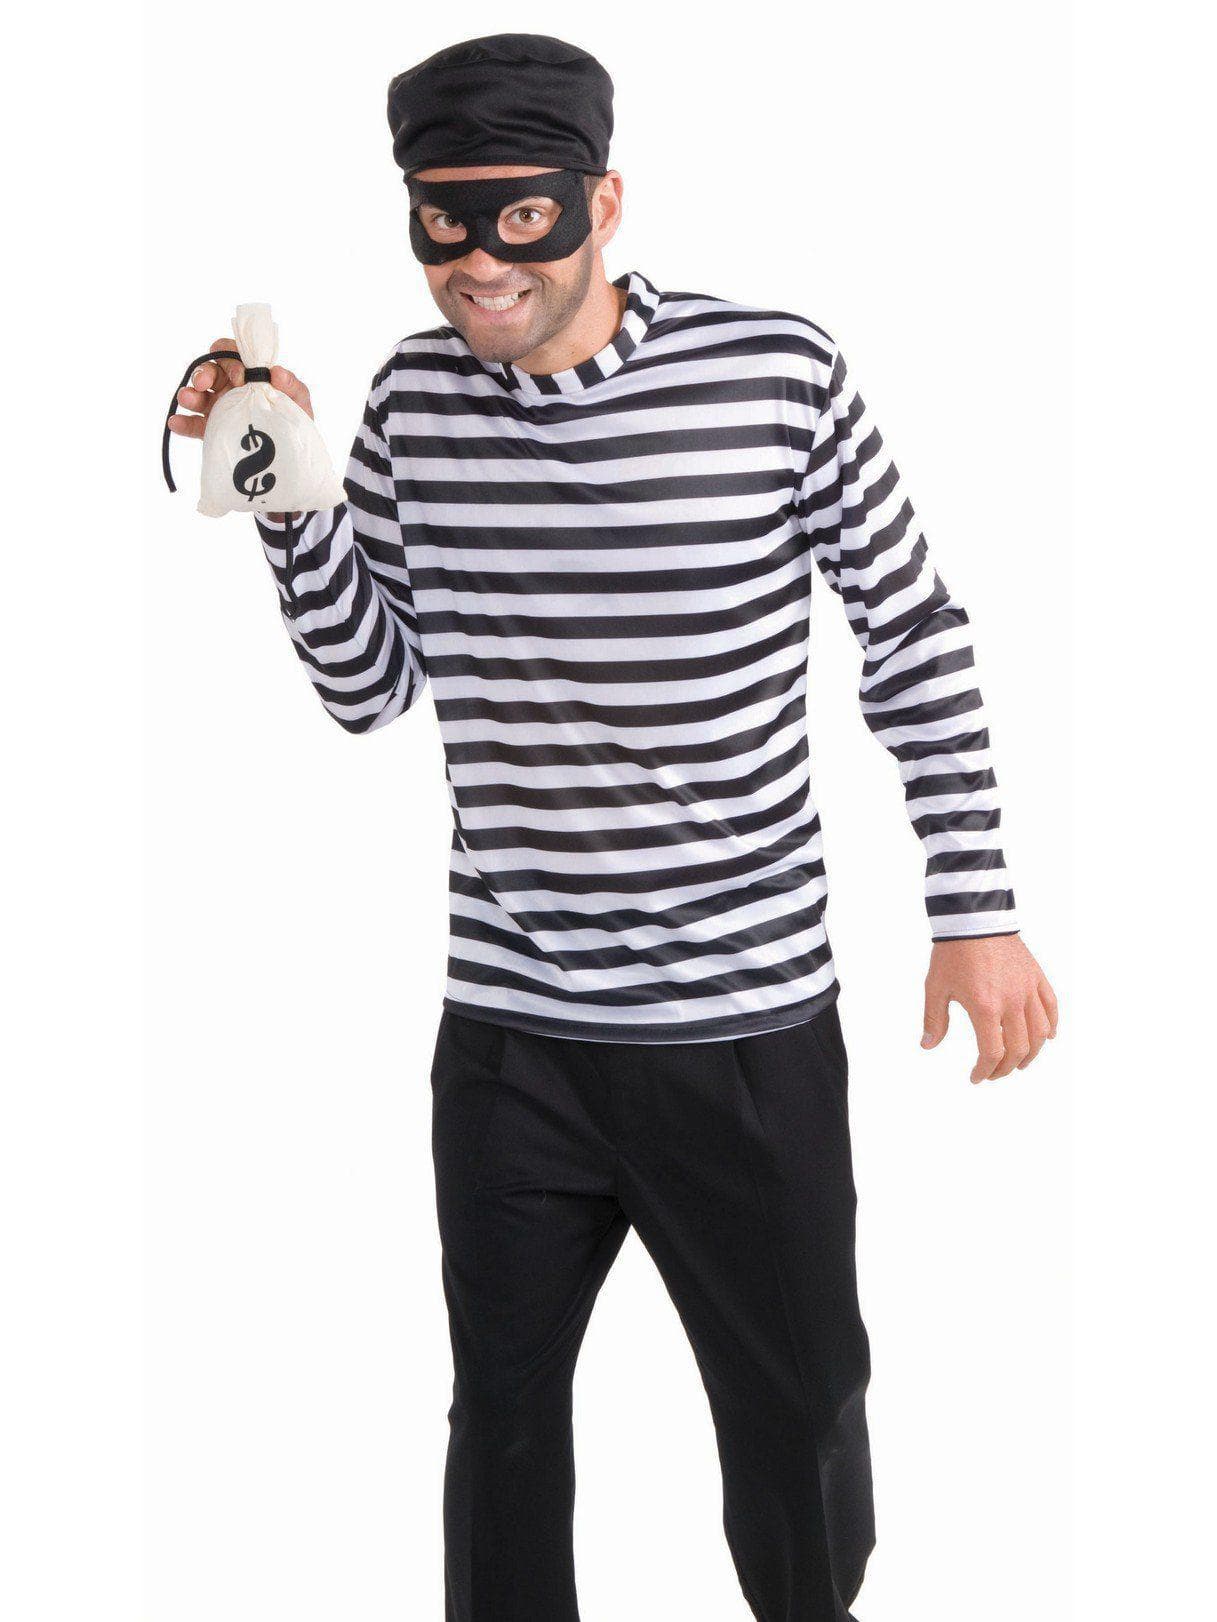 Adult Burglar Costume - costumes.com